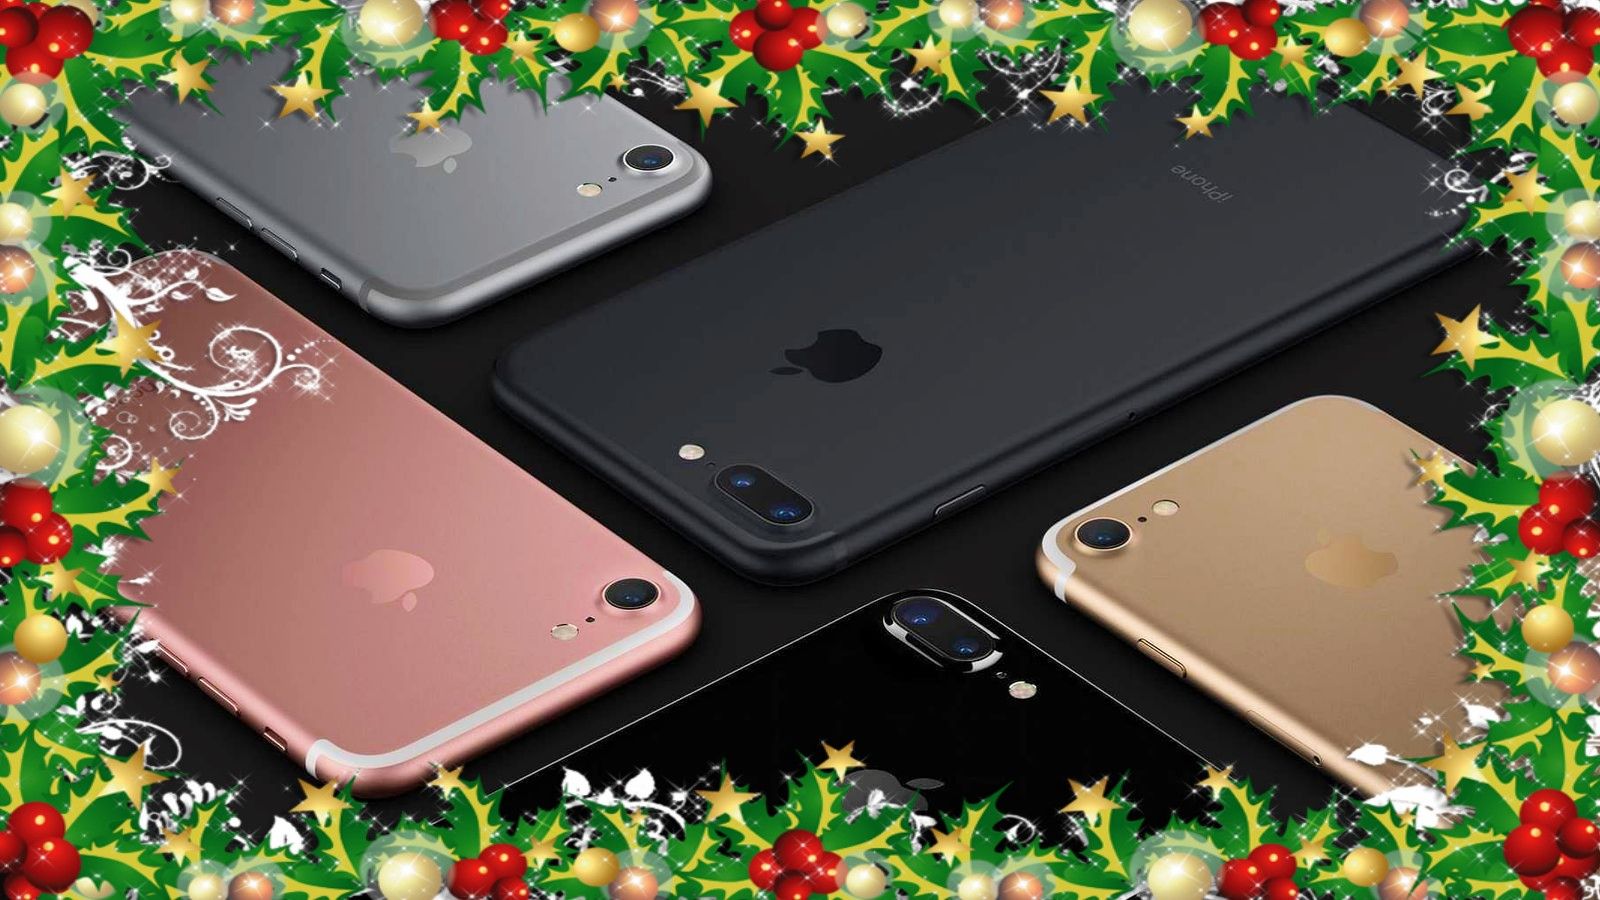 ของขวัญระดับพรีเมียม ยอดเปิดใช้ iPhone เพิ่มสูงถึง 44% ในช่วงเทศกาลคริสต์มาส